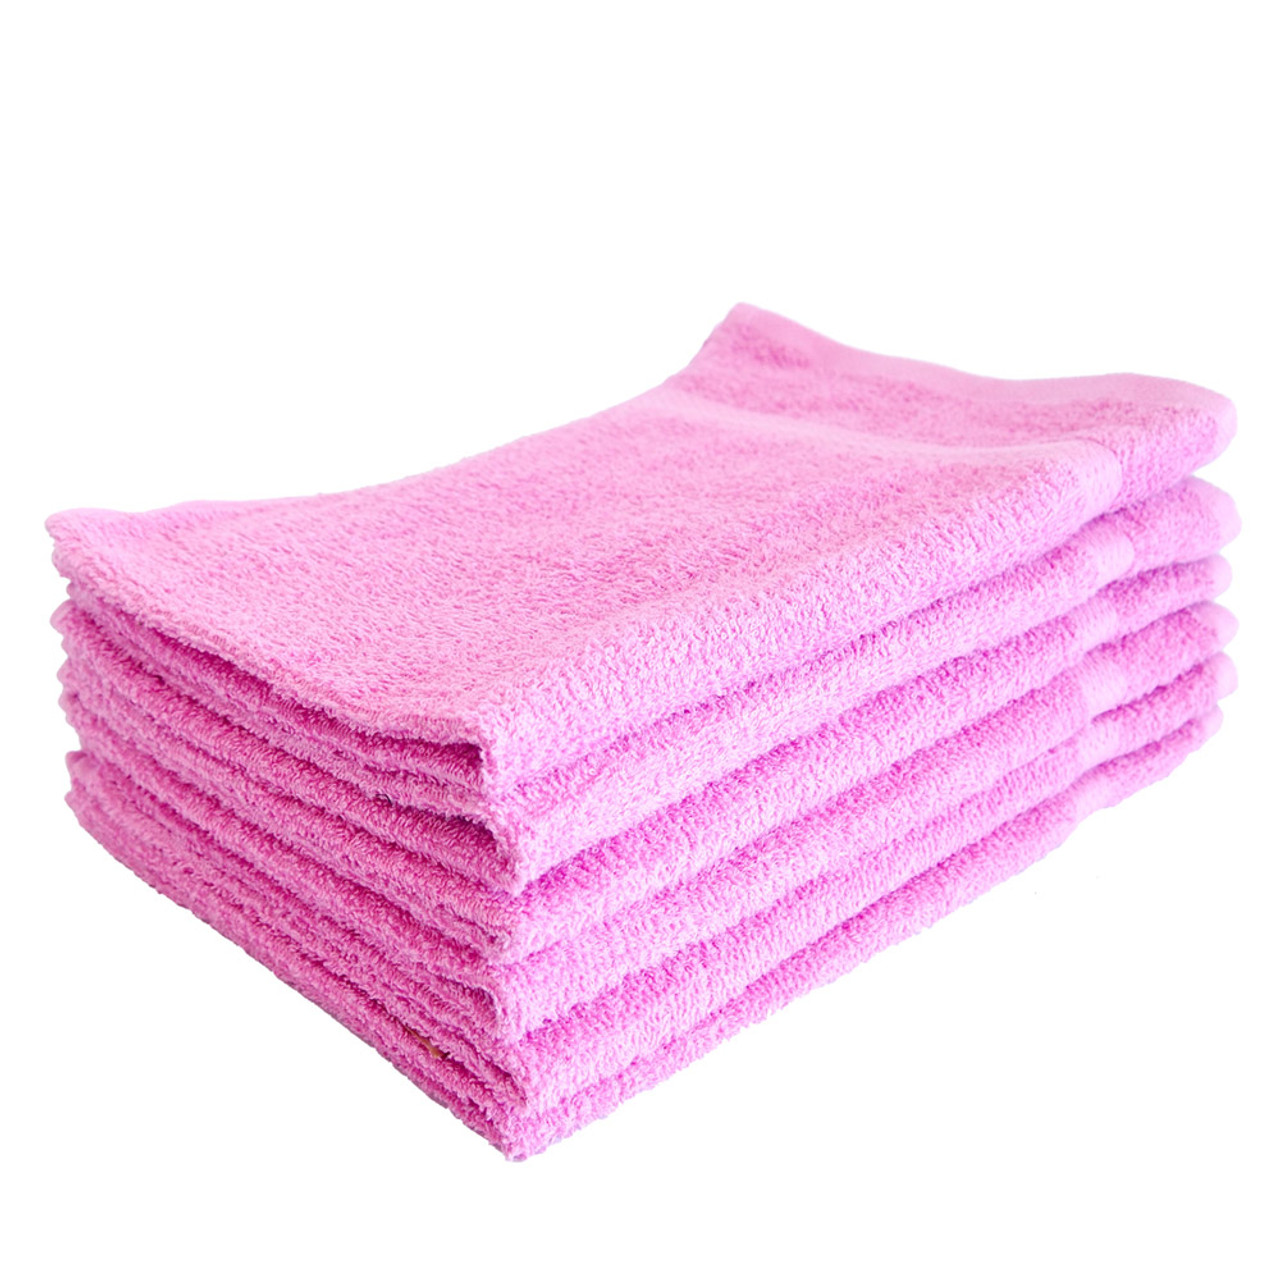 Wholesale Towels > 15x25 - Baby Pink Hand Towels Premium Plus 100% Cotton